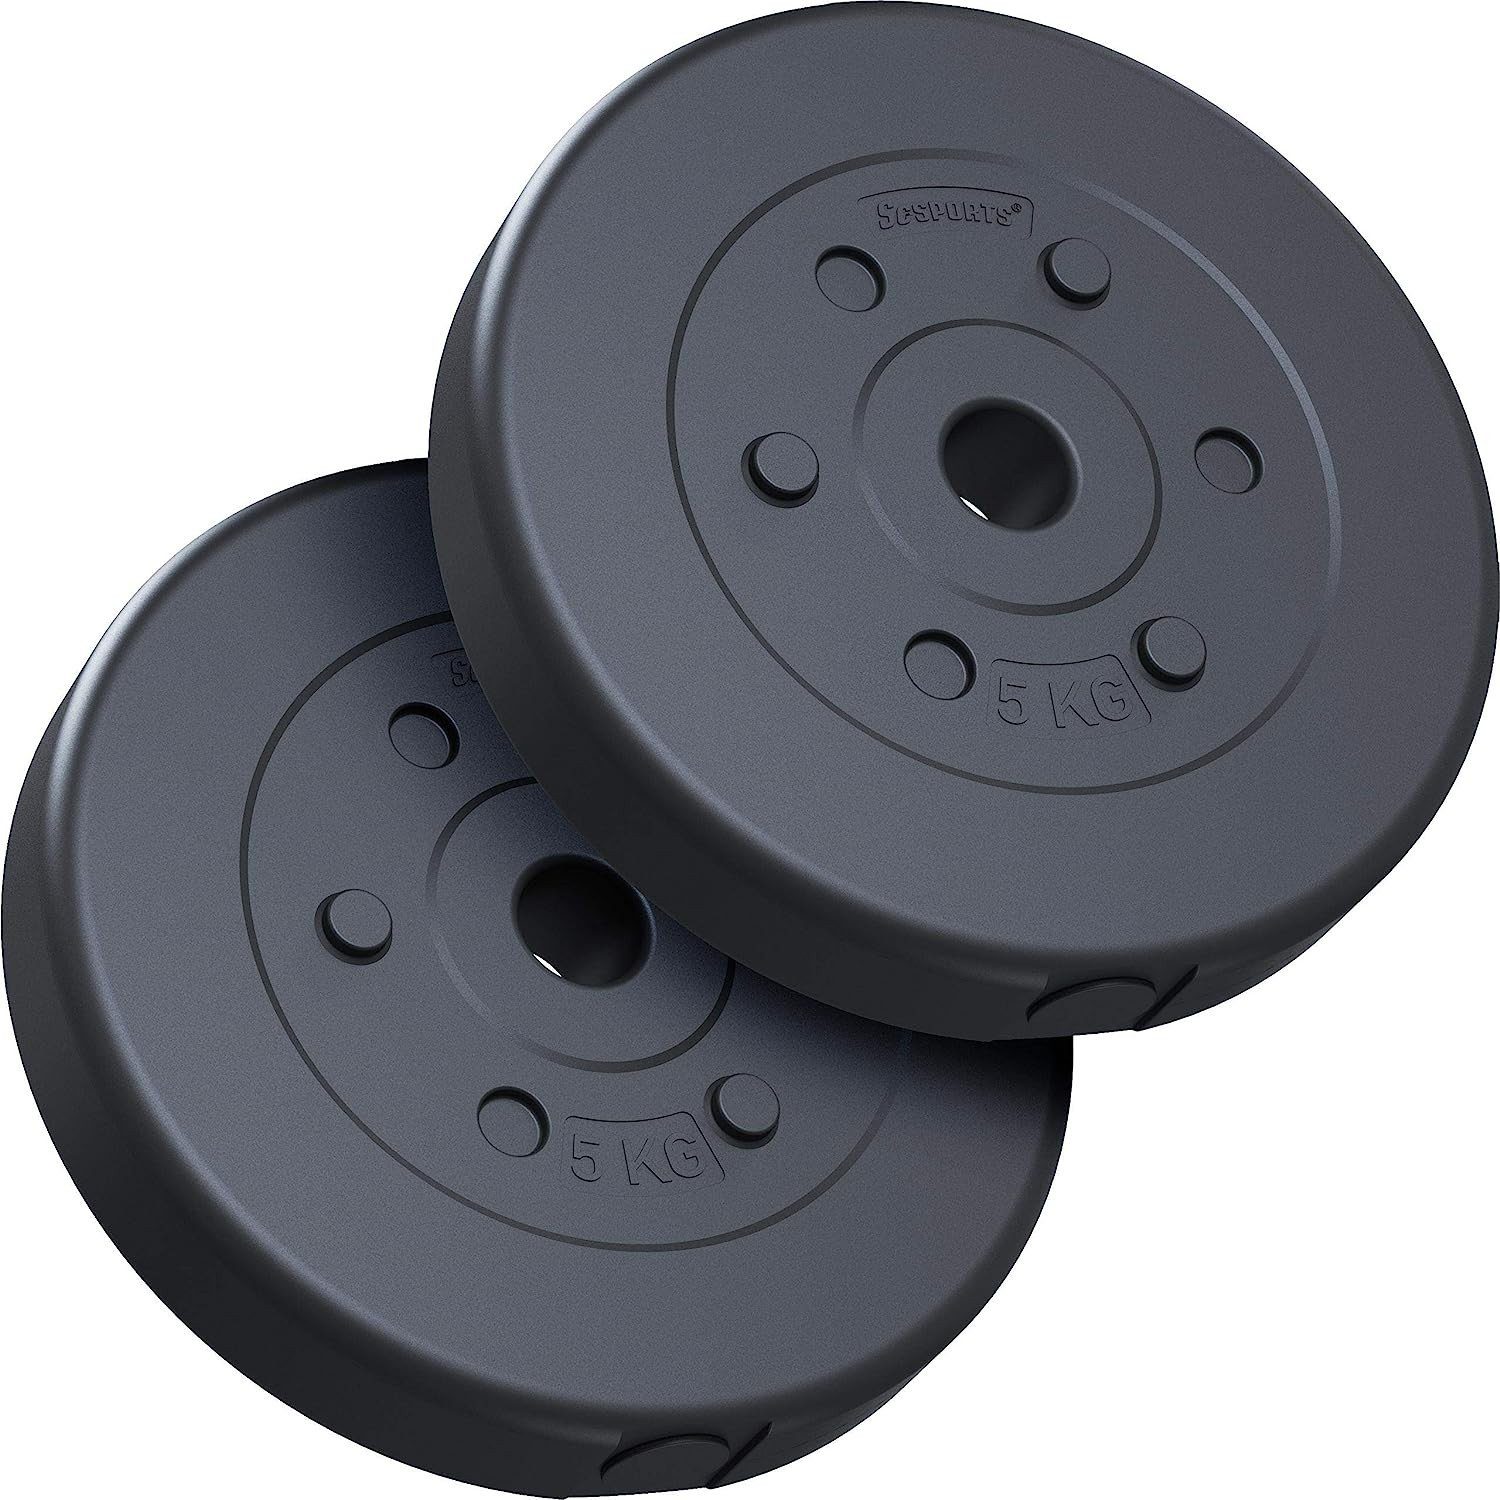 Gewichtsscheiben (10002979-tlg) Gewichte, Set 10 ScSPORTS® 30/31mm Kunststoff kg Hantelscheiben